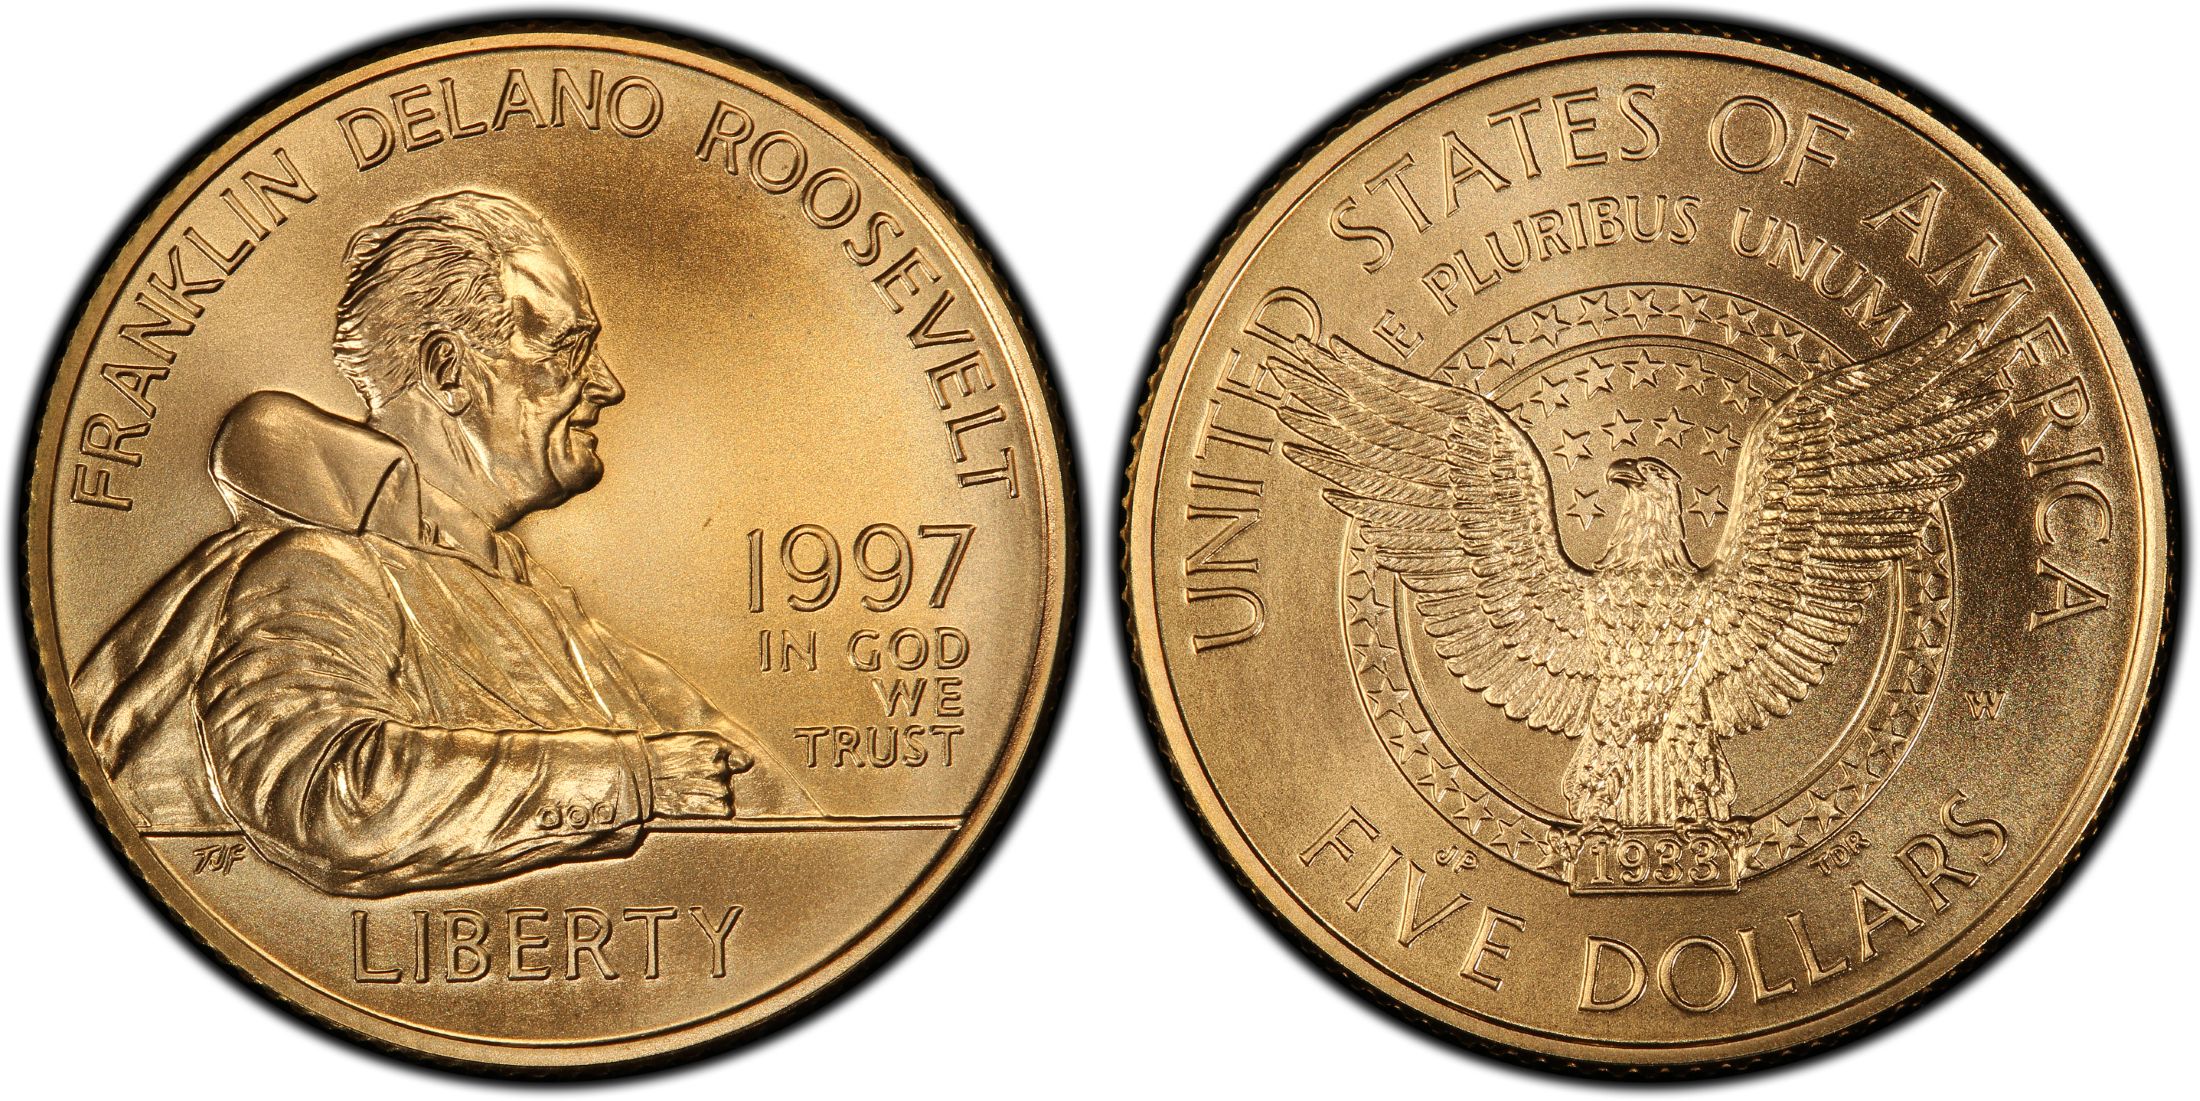 1997 FDR $5 Gold